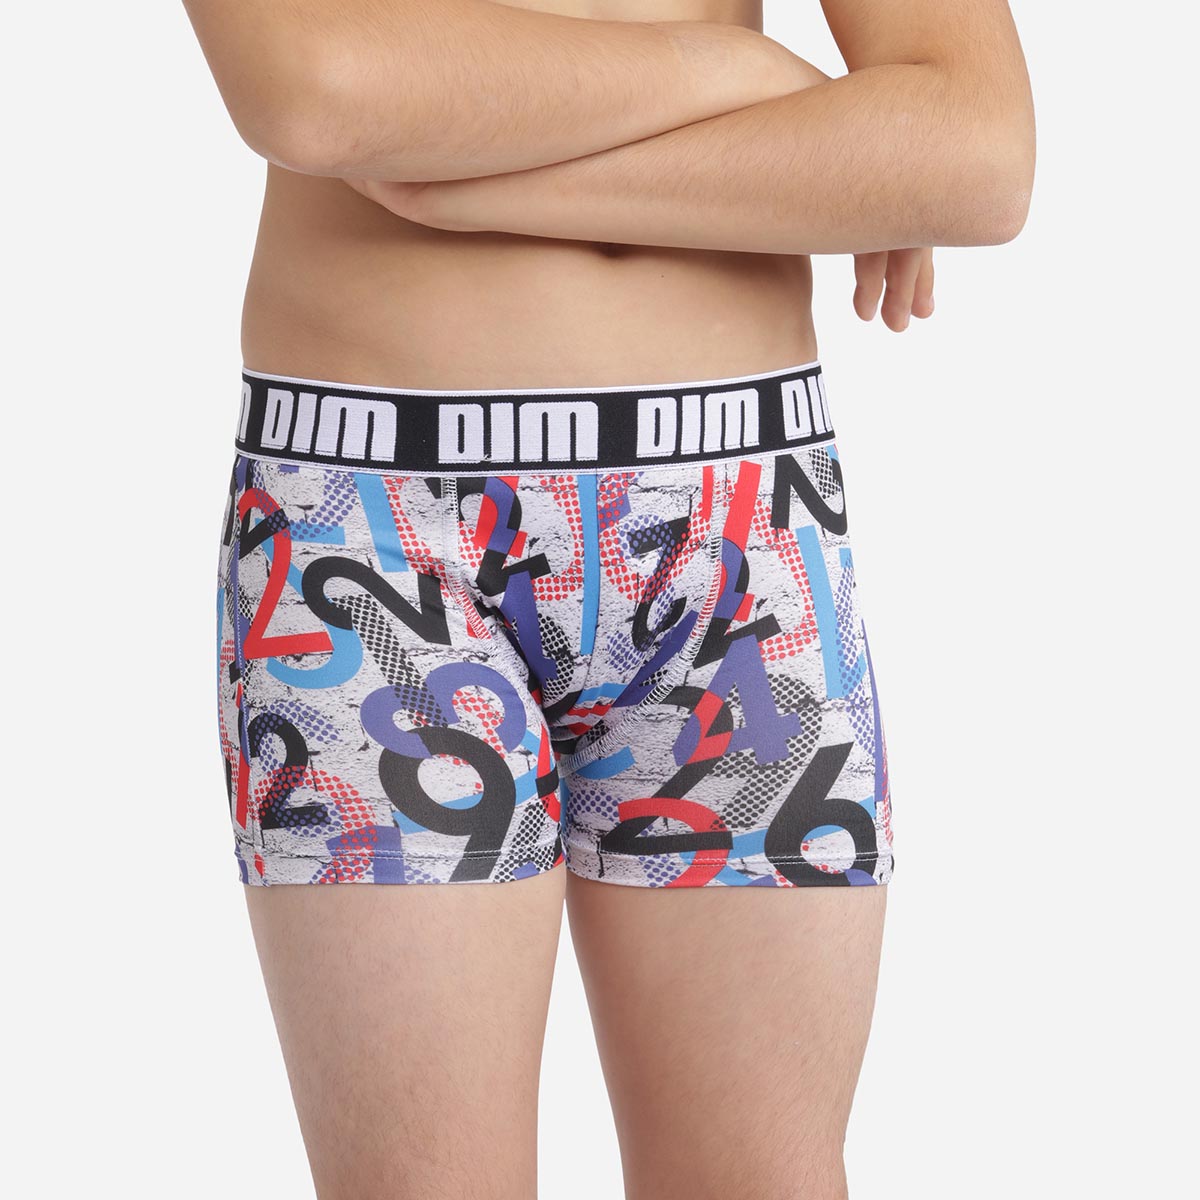 Haan bedenken ondergoed Gray Dim Micro Boy's boxer briefs in microfiber with printed numbers